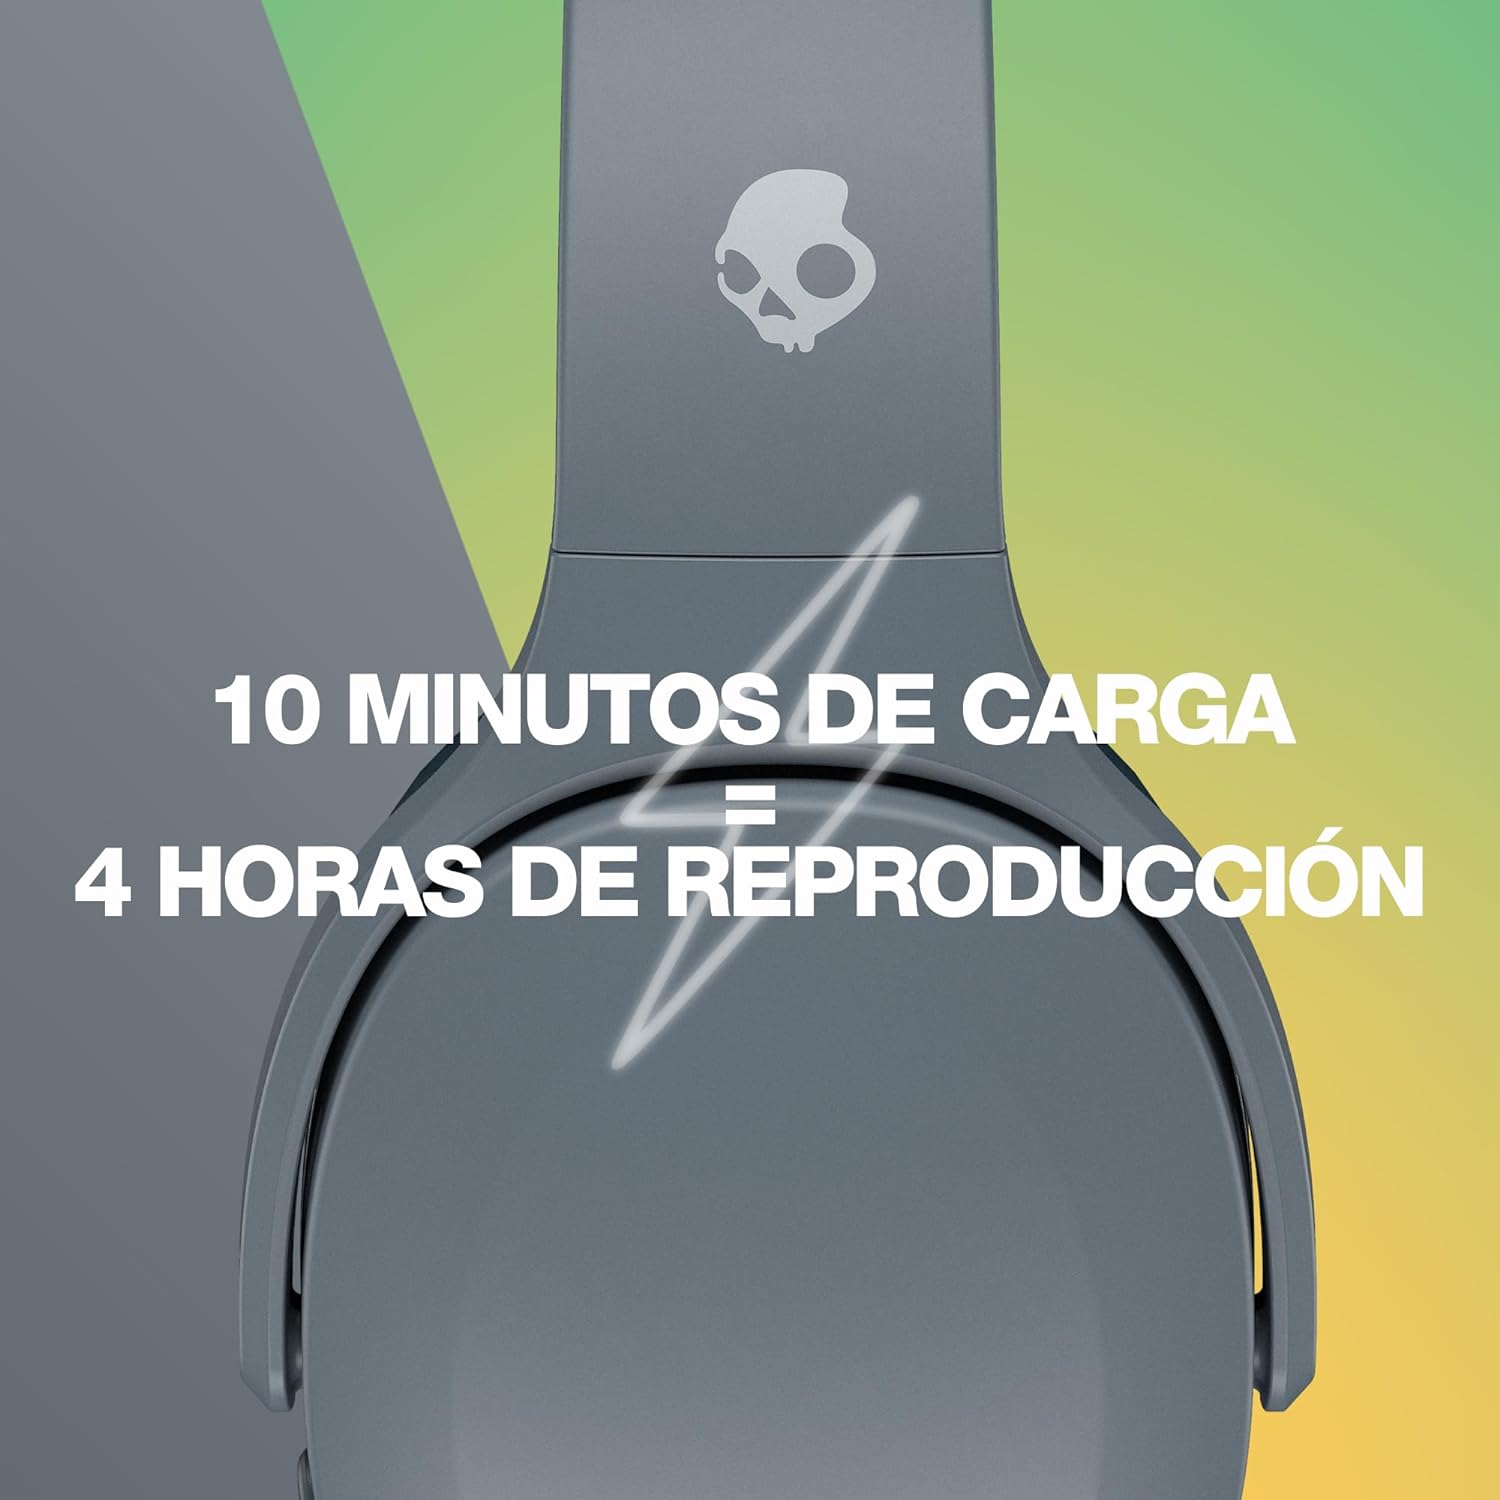 Skullcandy Crusher Evo Cascos Over-Ear Inalámbricos con Sensory Bass, 40 h de Autonomía, Micrófono, Compatibles con iPhone Android y Dispositivos Bluetooth, Negro